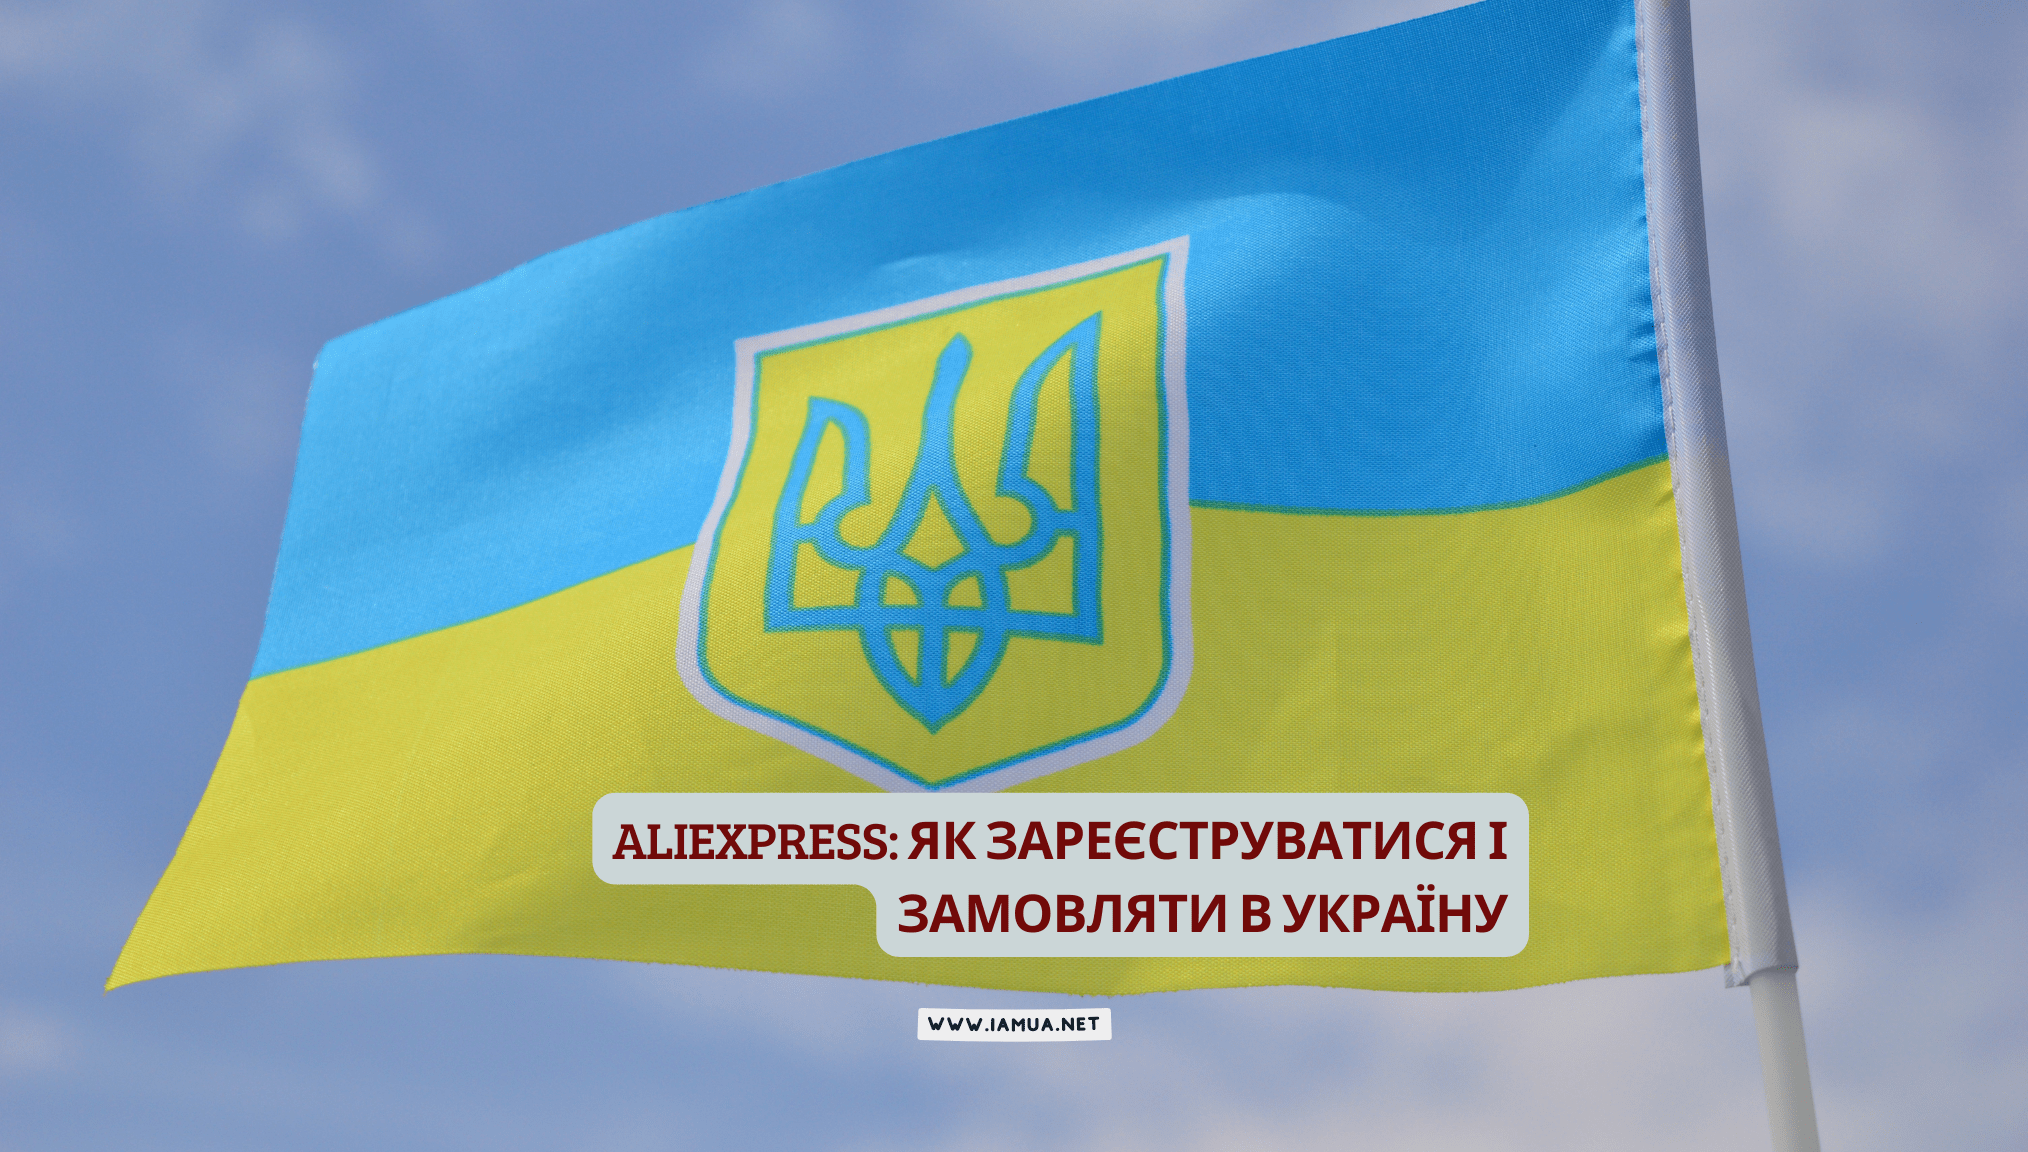 AliExpress (АліЕкспресс Україна): реєстрація, як замовляти, доставка в Україну, відгуки, оплата